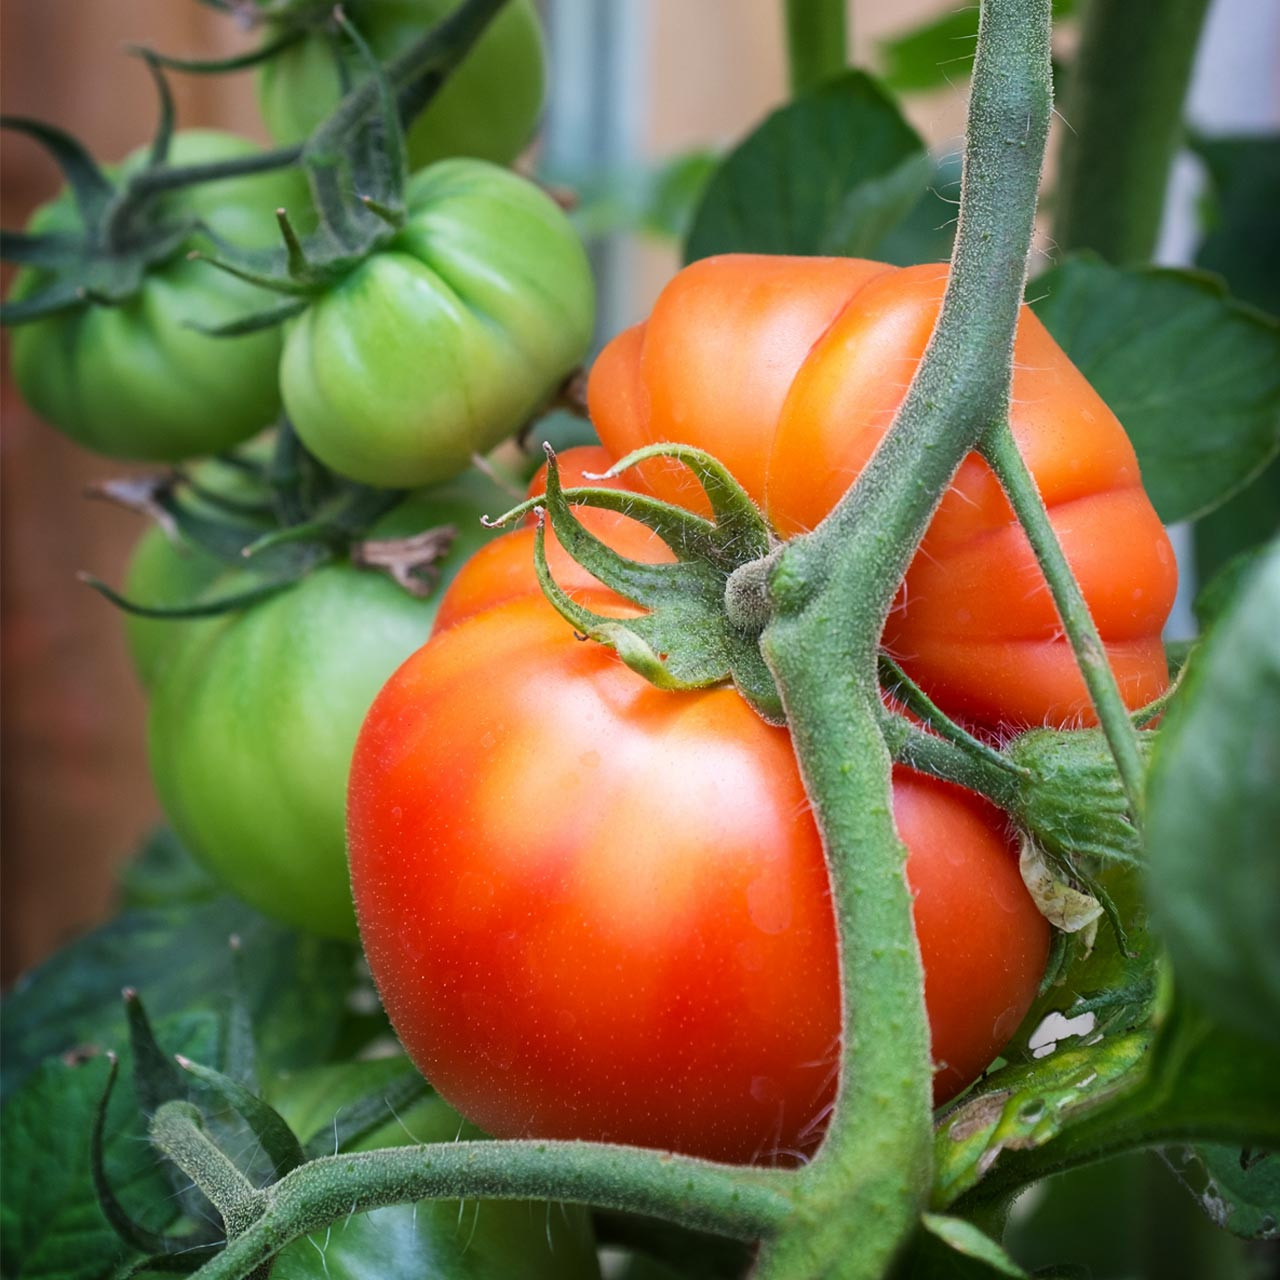 Beefsteak Tomato (Solanum lycopersicum)